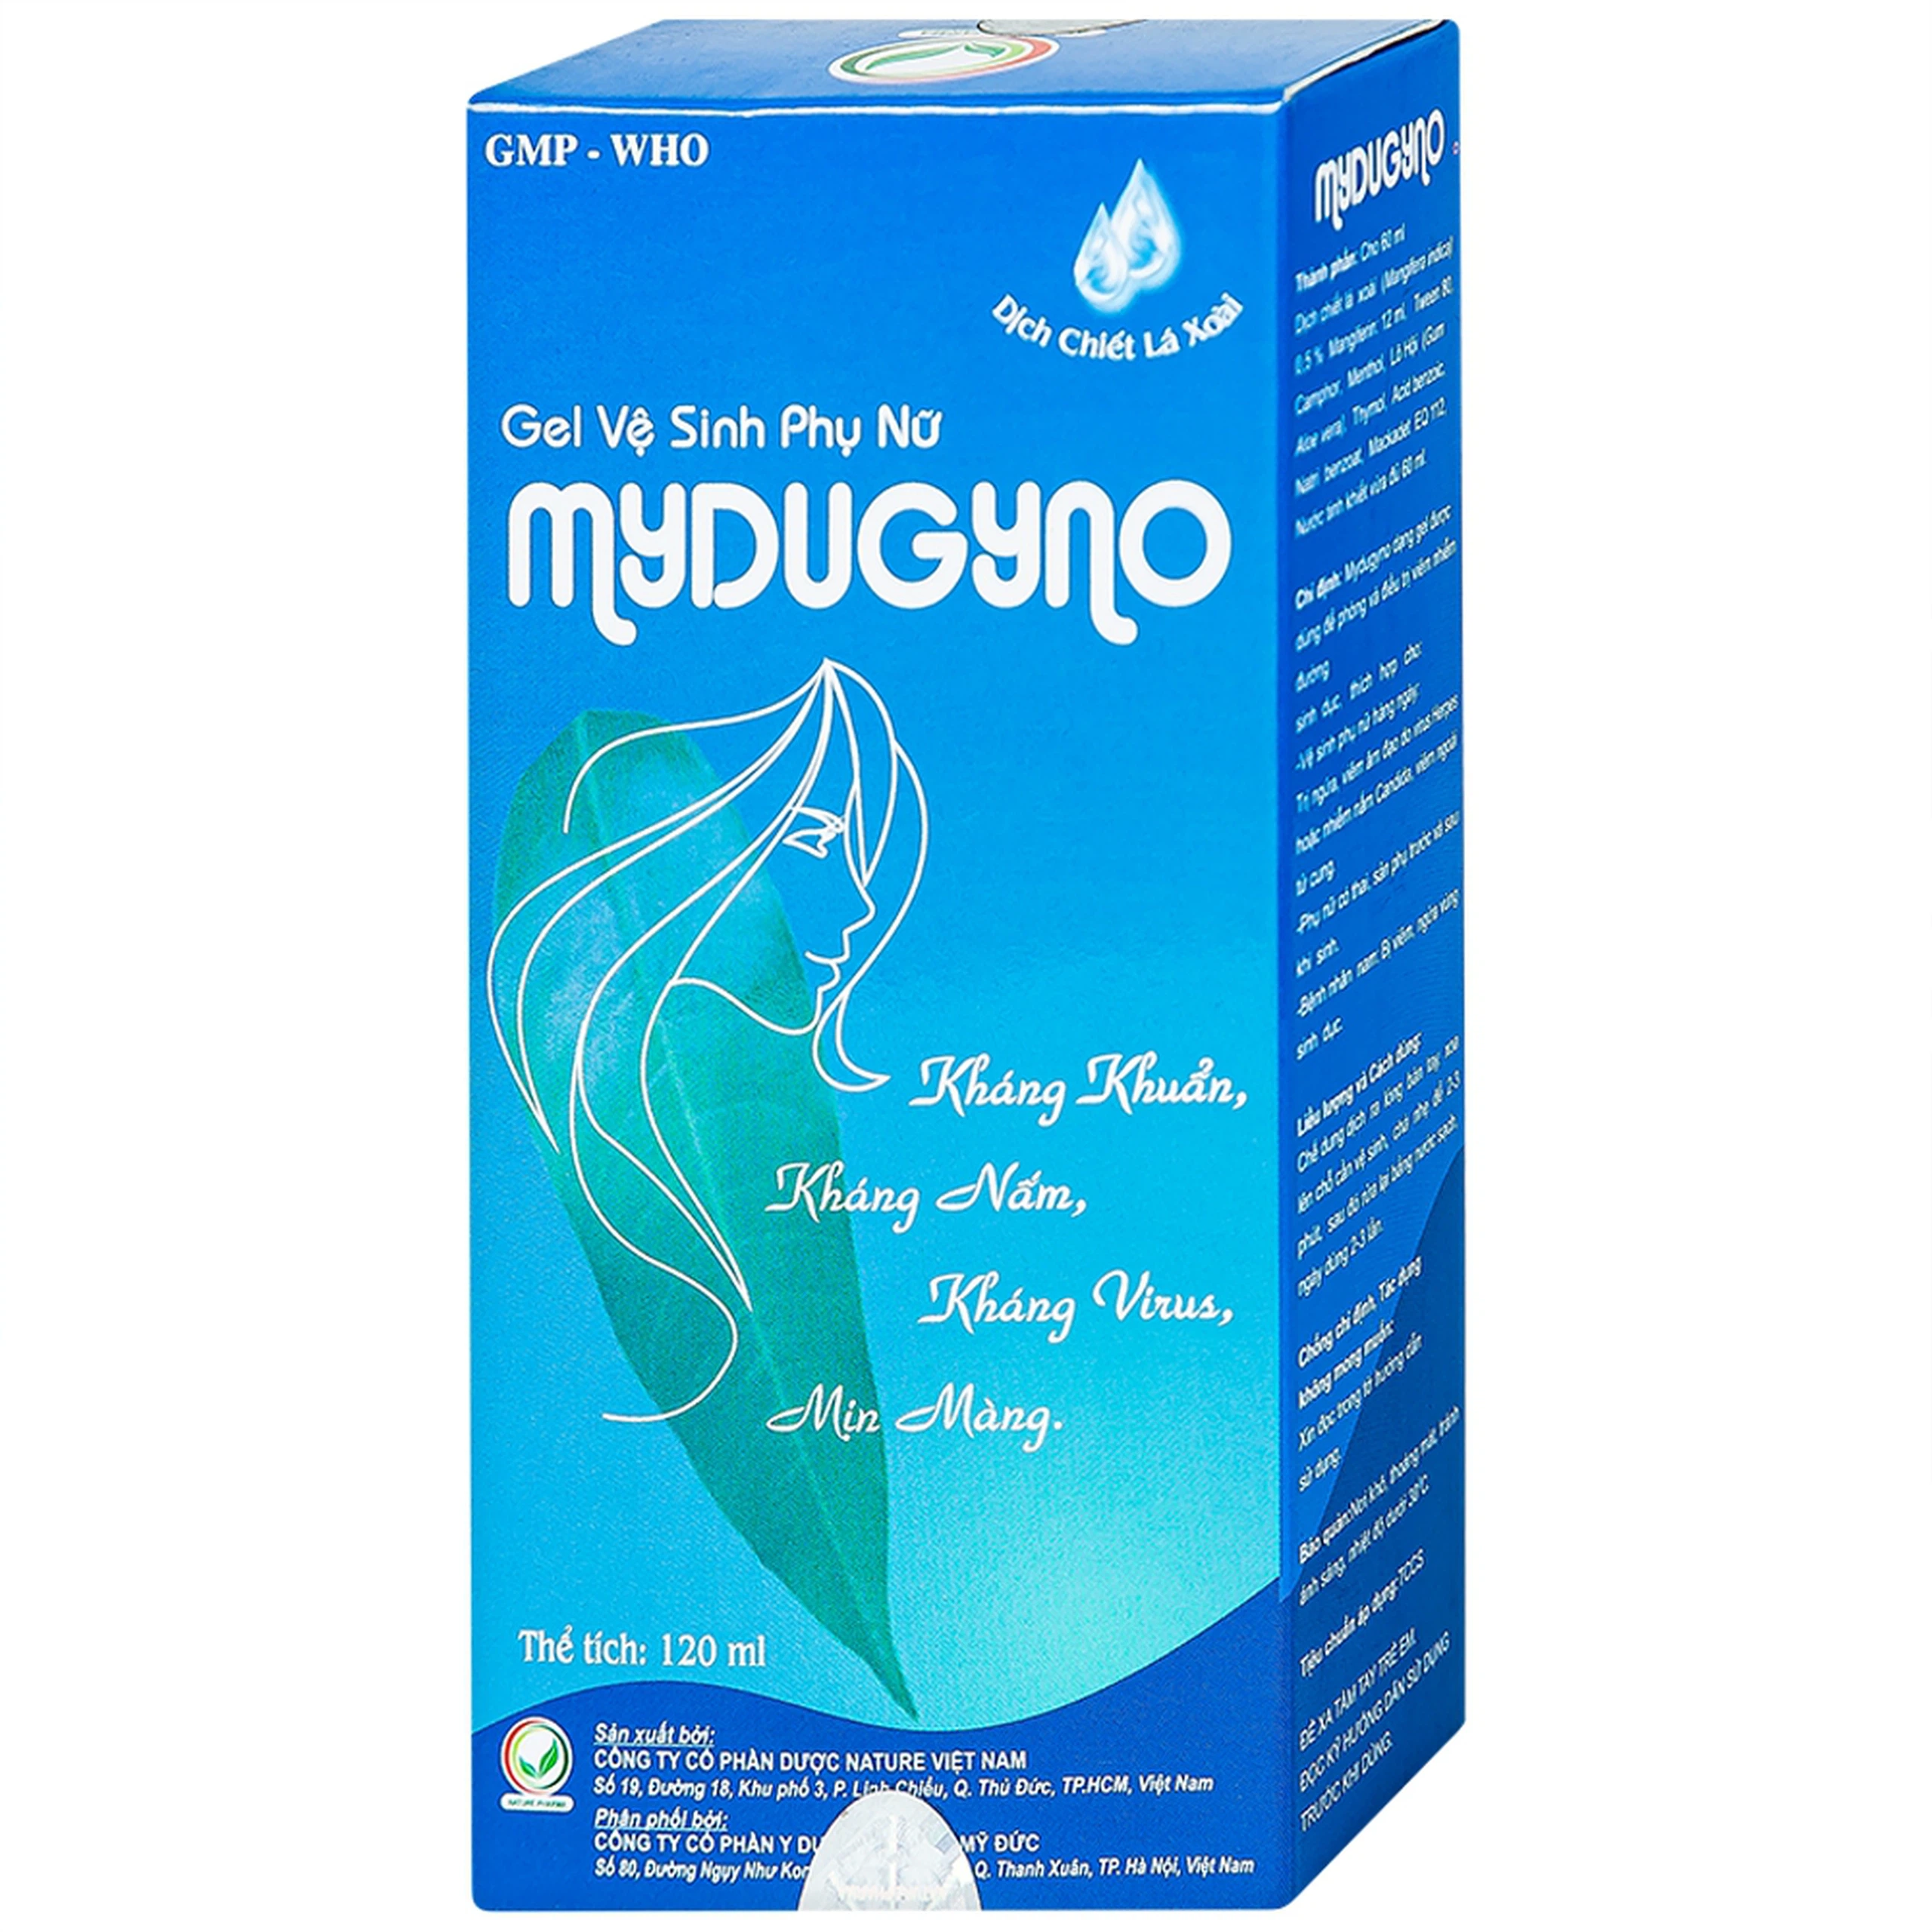 Gel vệ sinh phụ nữ Mydugyno Nature kháng khuẩn, kháng nấm, kháng virus (120ml) 